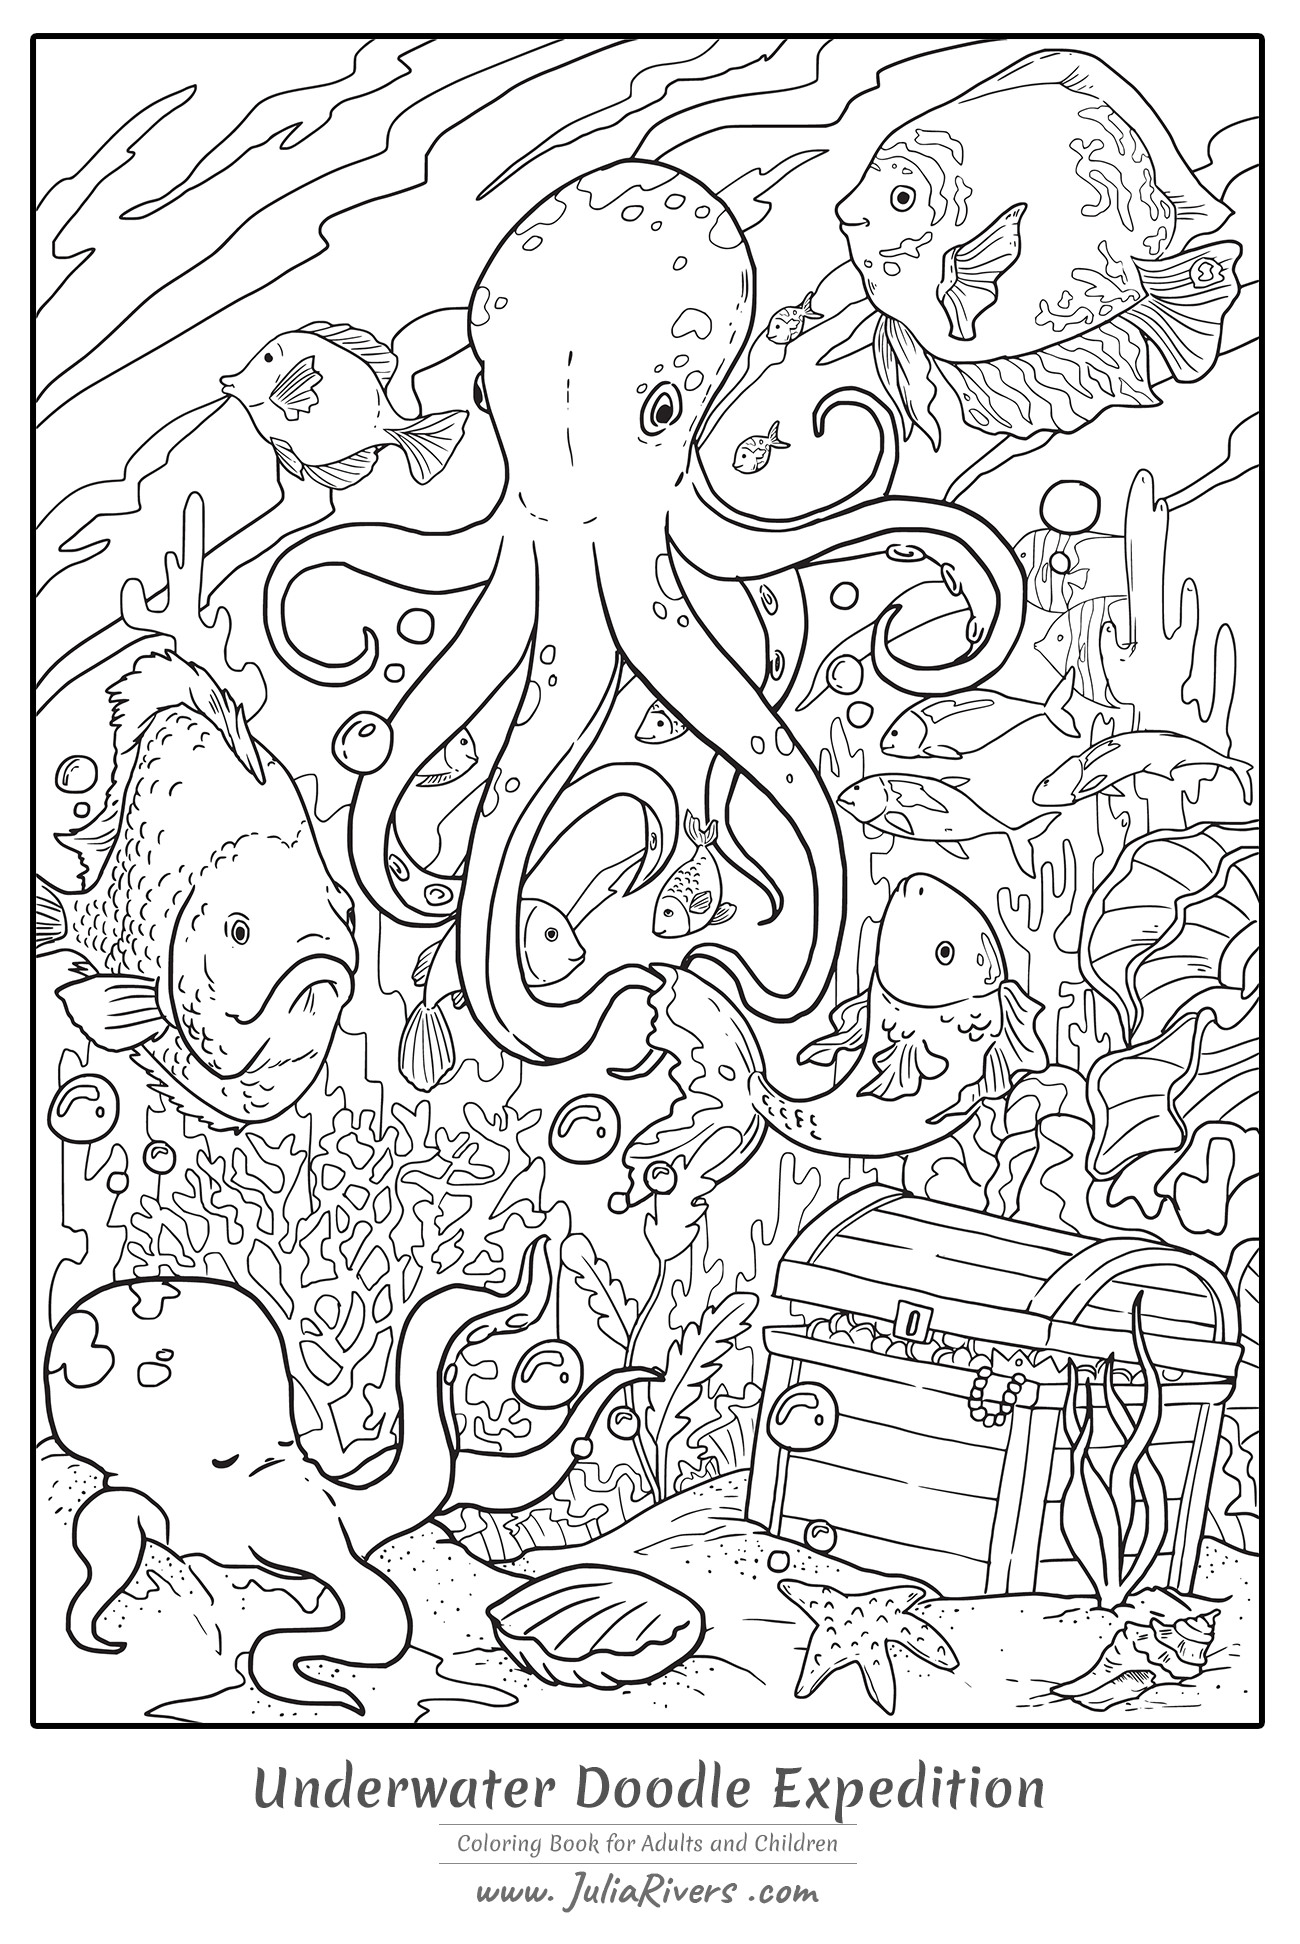 'Expedición submarina Doodle' : Magnífica página para colorear que representa un Pulpo gigante en el fondo del mar, con peces, corales y un misterioso tesoro, Artista : Julia Rivers